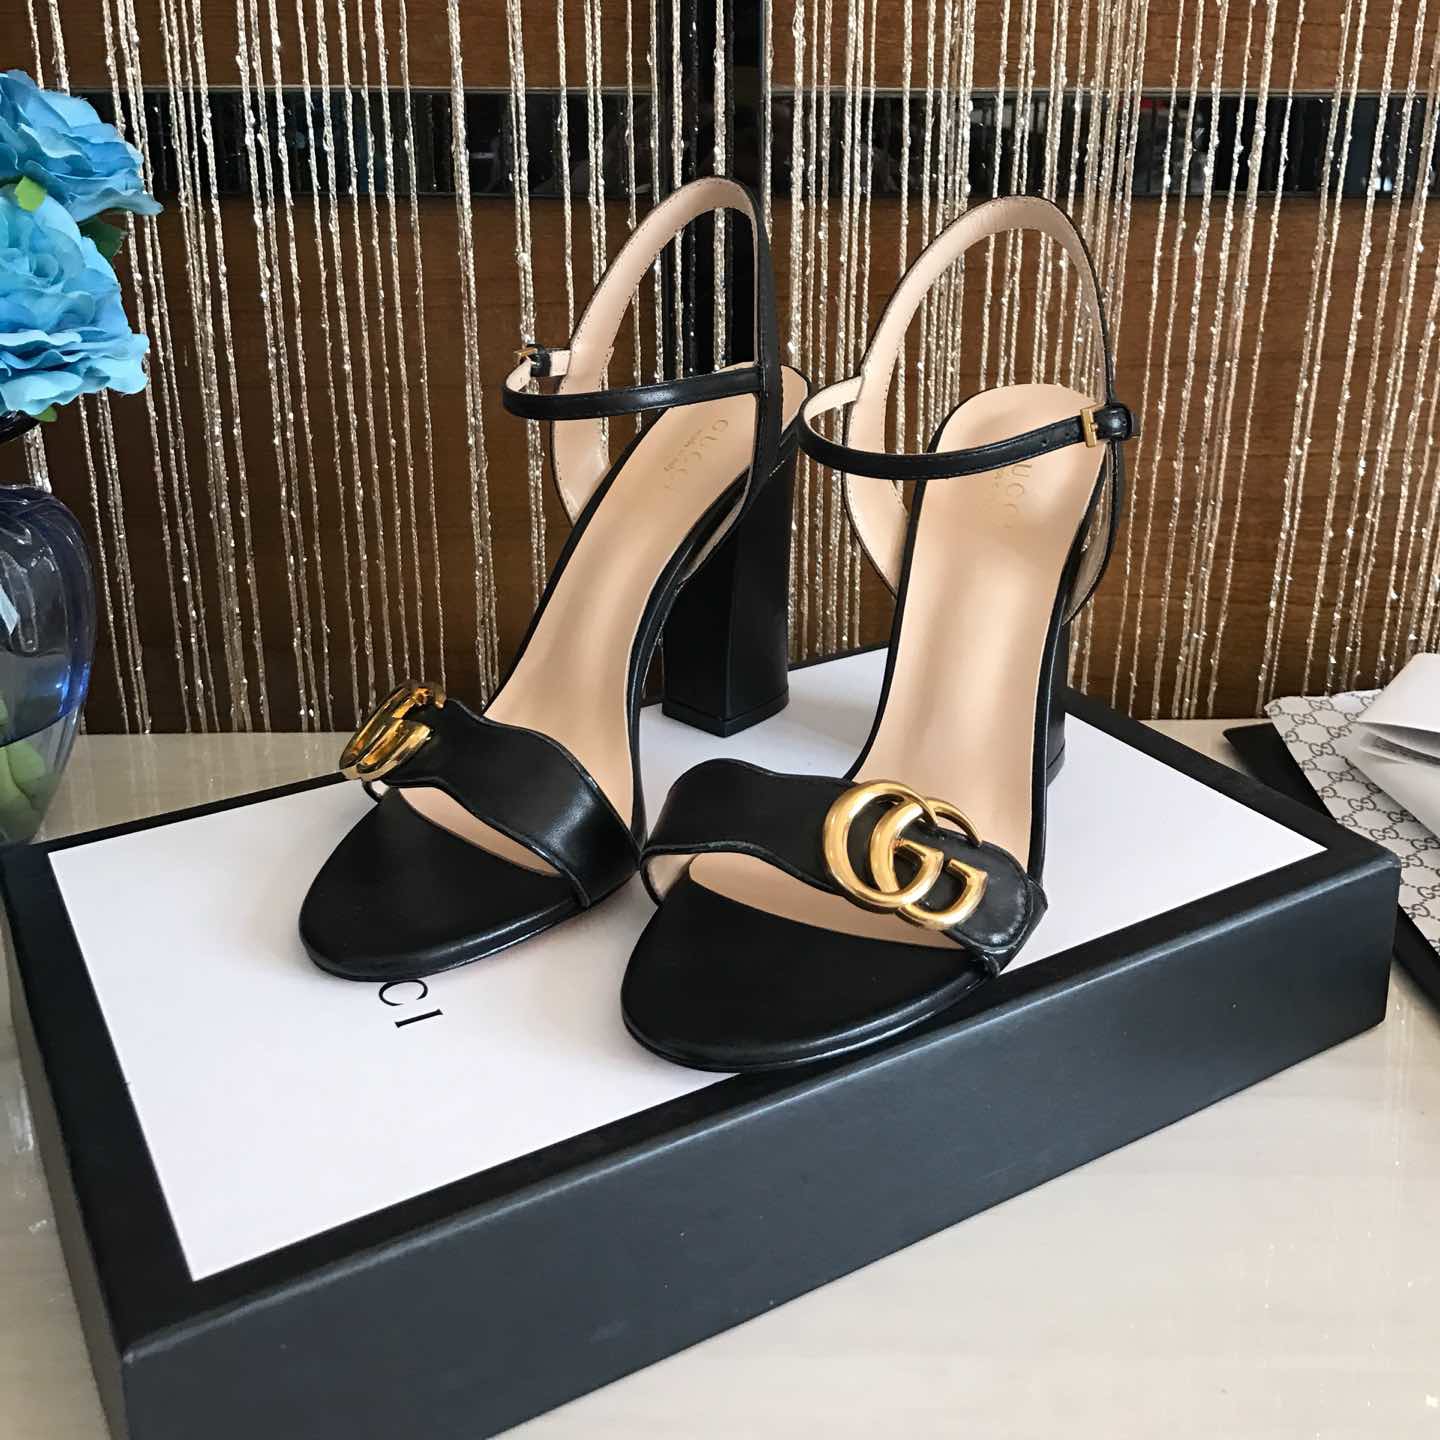 Evropske in ameriške zvezde nove trgovine sandali Gucci SANDALI